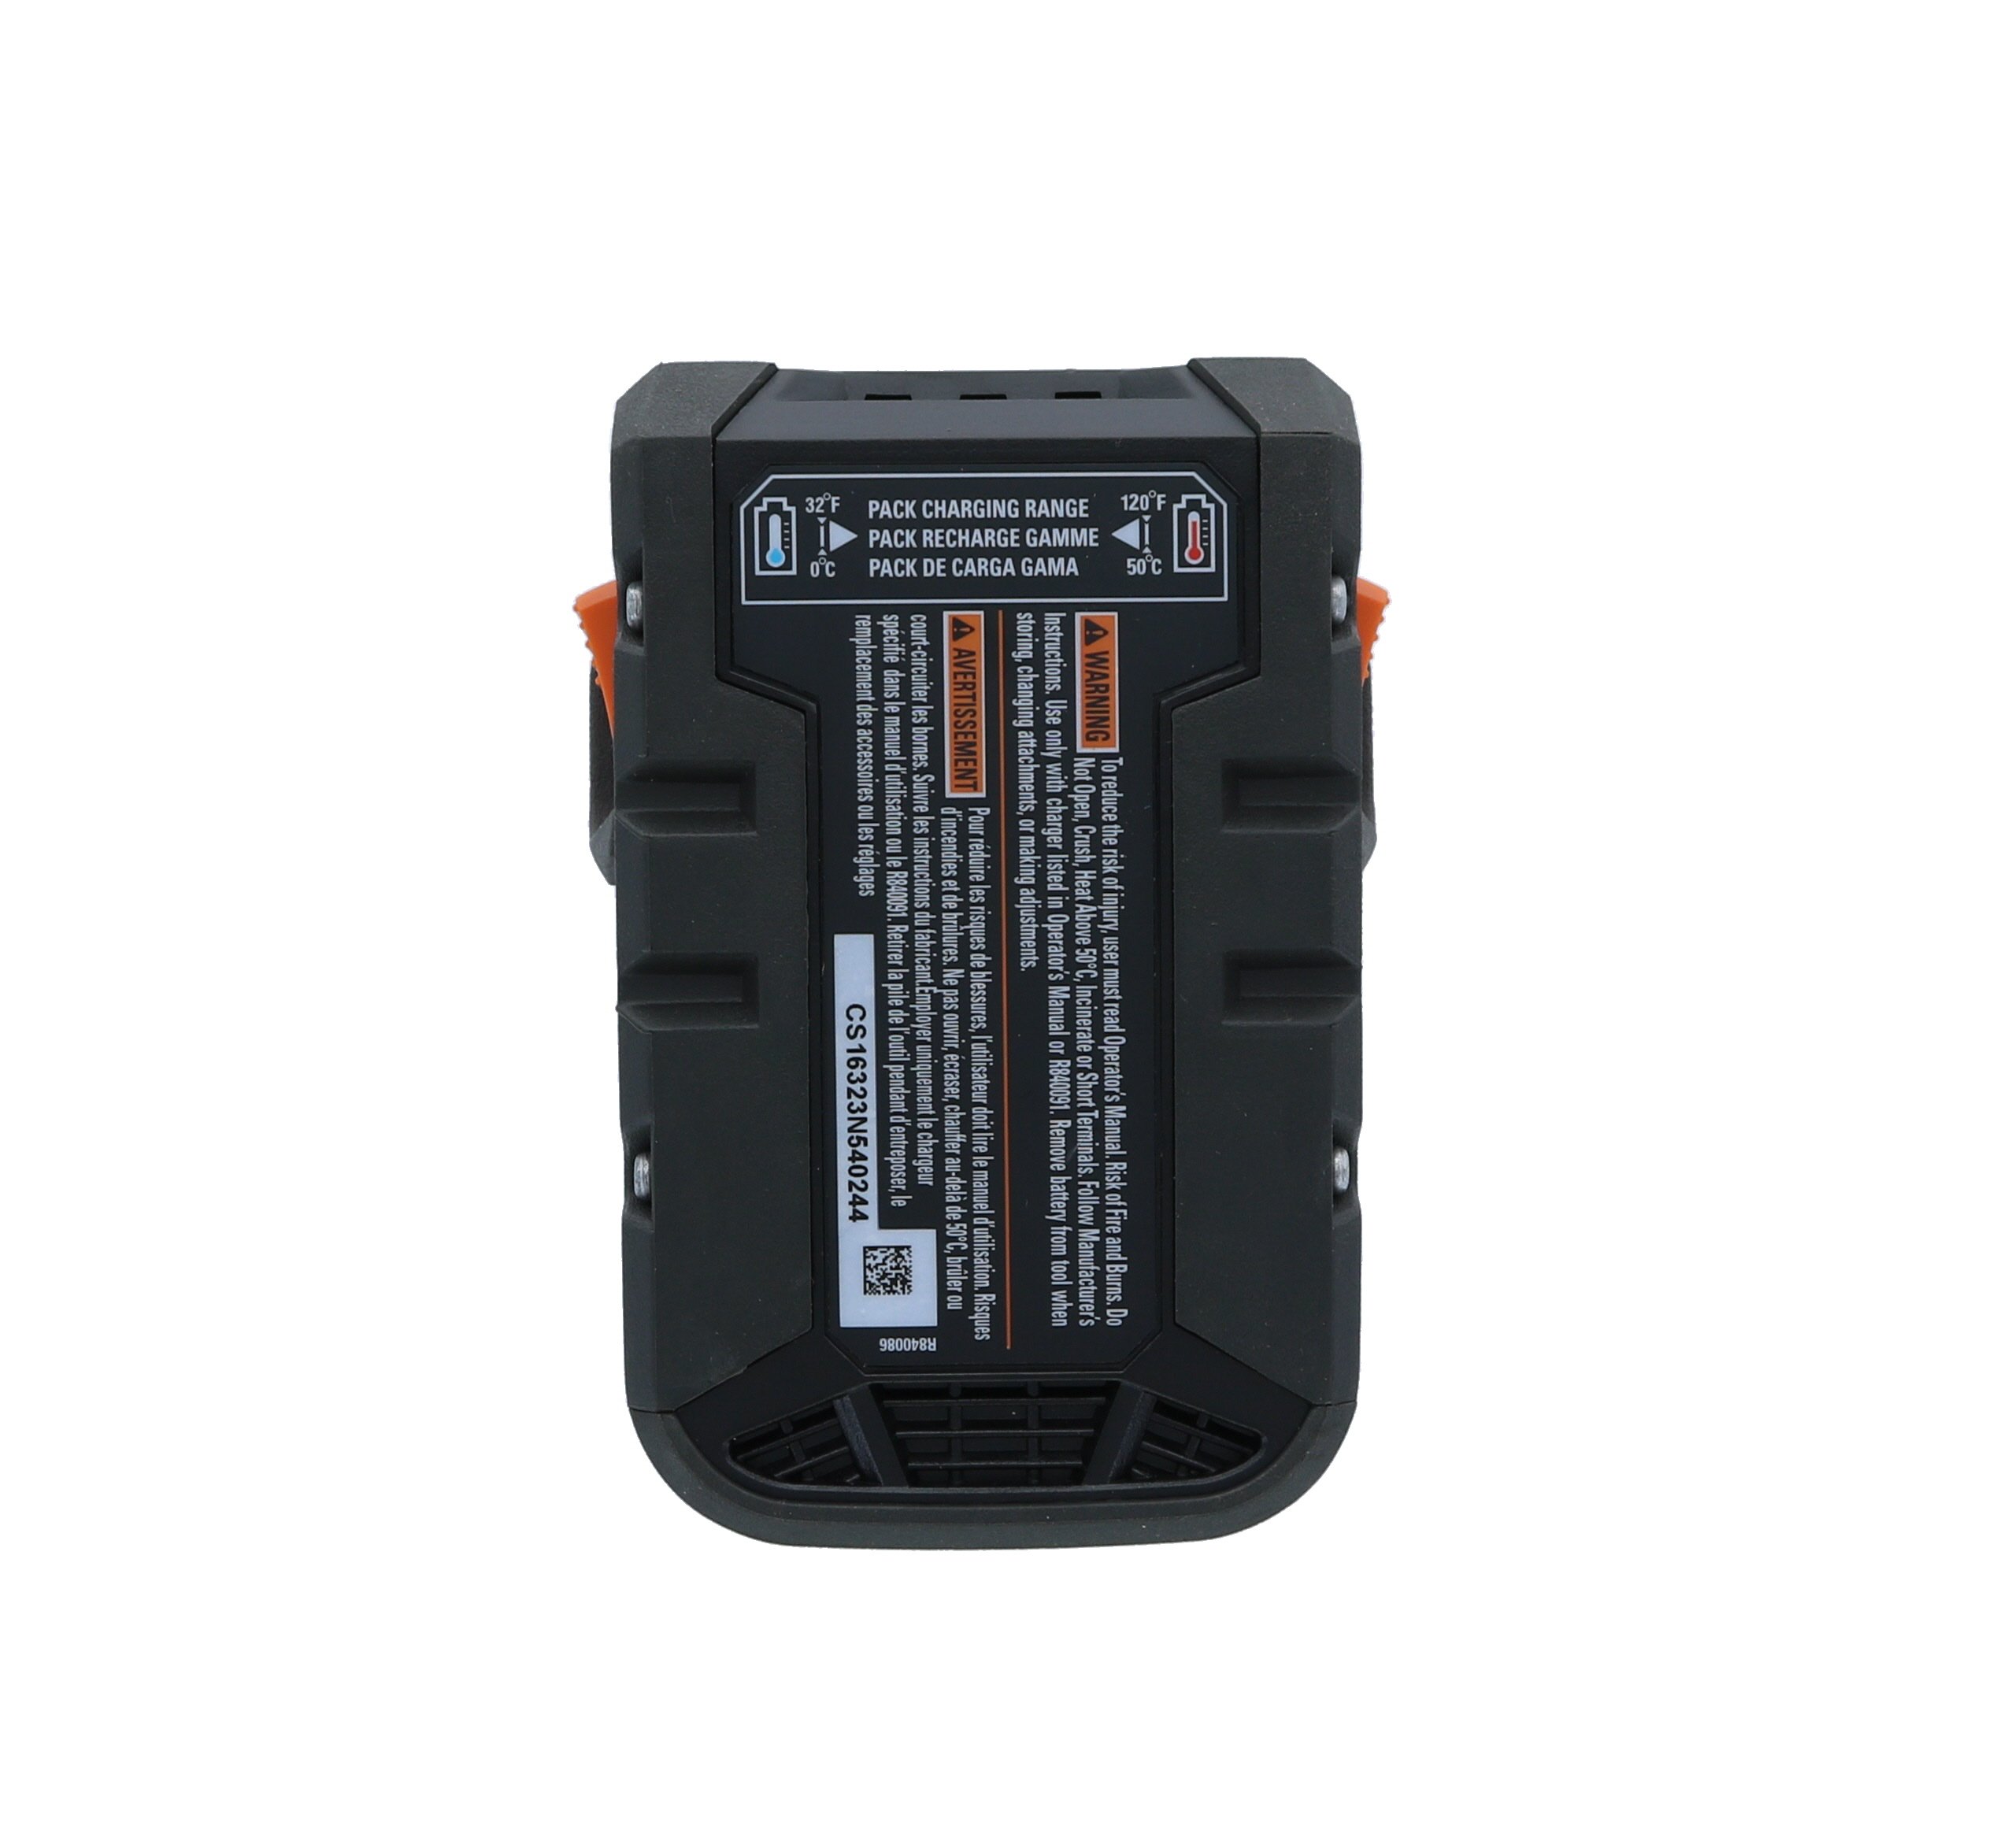 Mua Ridgid Genuine OEM AC840086 18V 2AH Hyper Lithium-Ion Single Battery  trên Amazon Mỹ chính hãng 2023 Giaonhan247